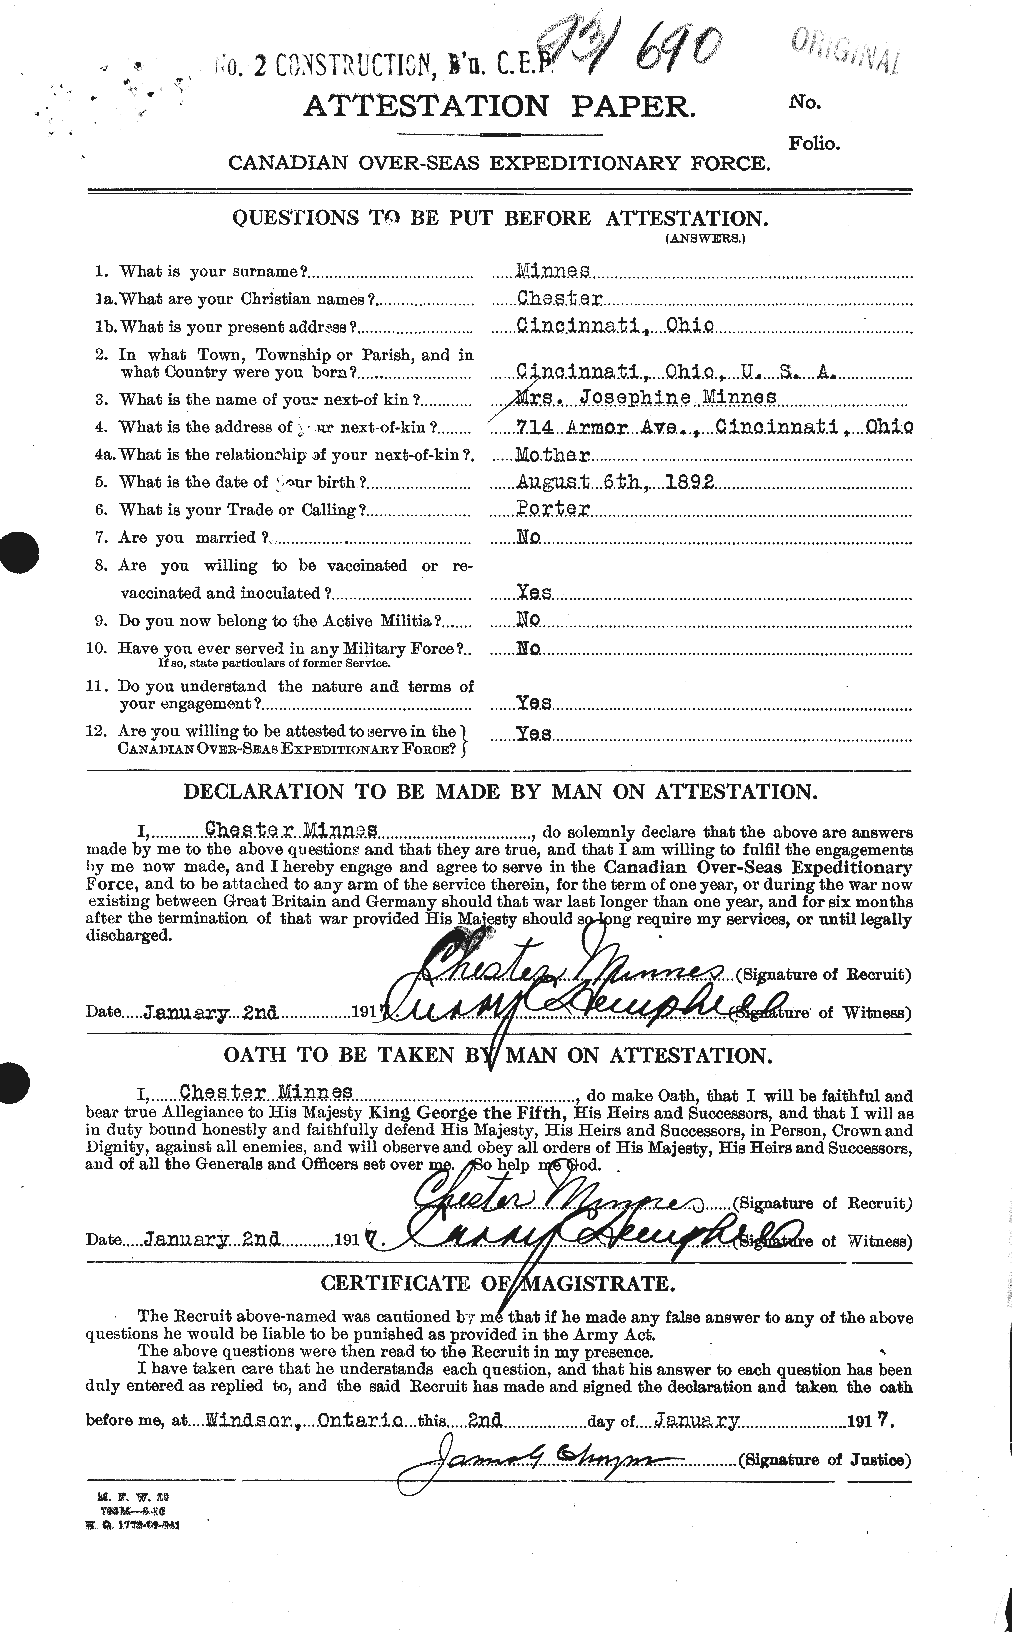 Dossiers du Personnel de la Première Guerre mondiale - CEC 500913a